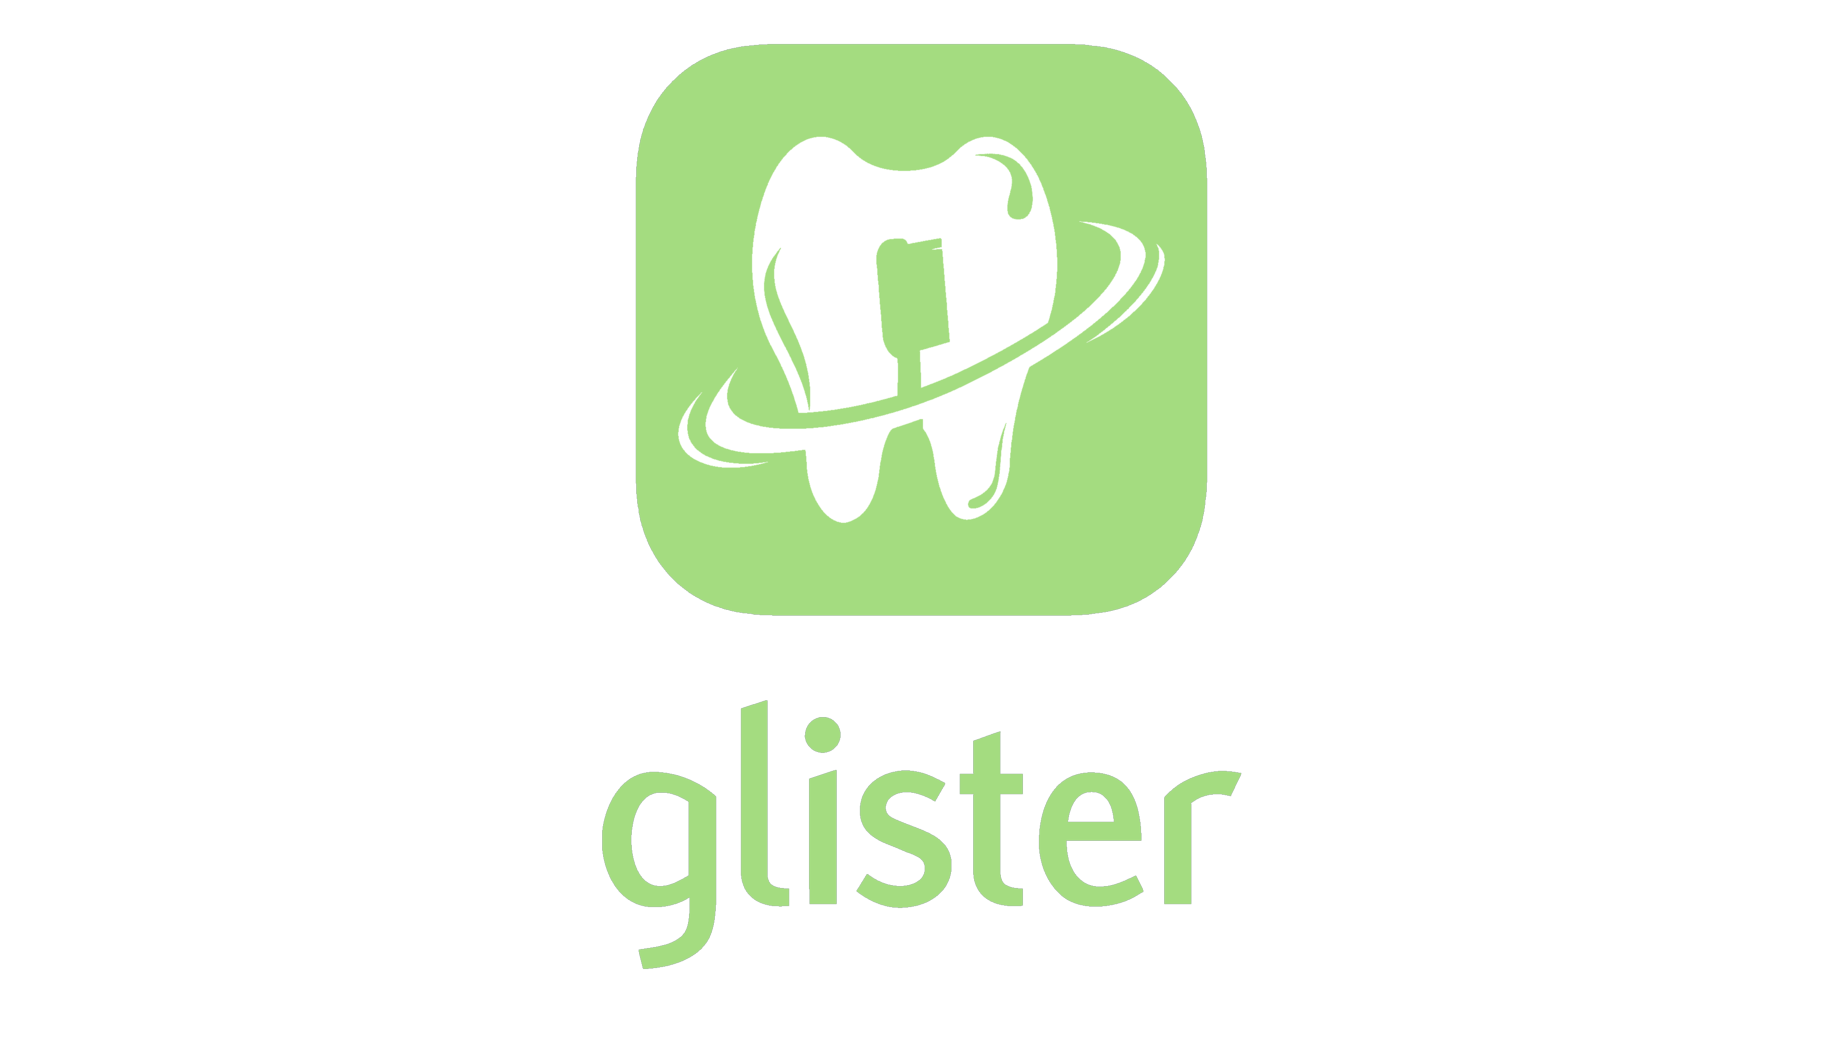 Glister symbol